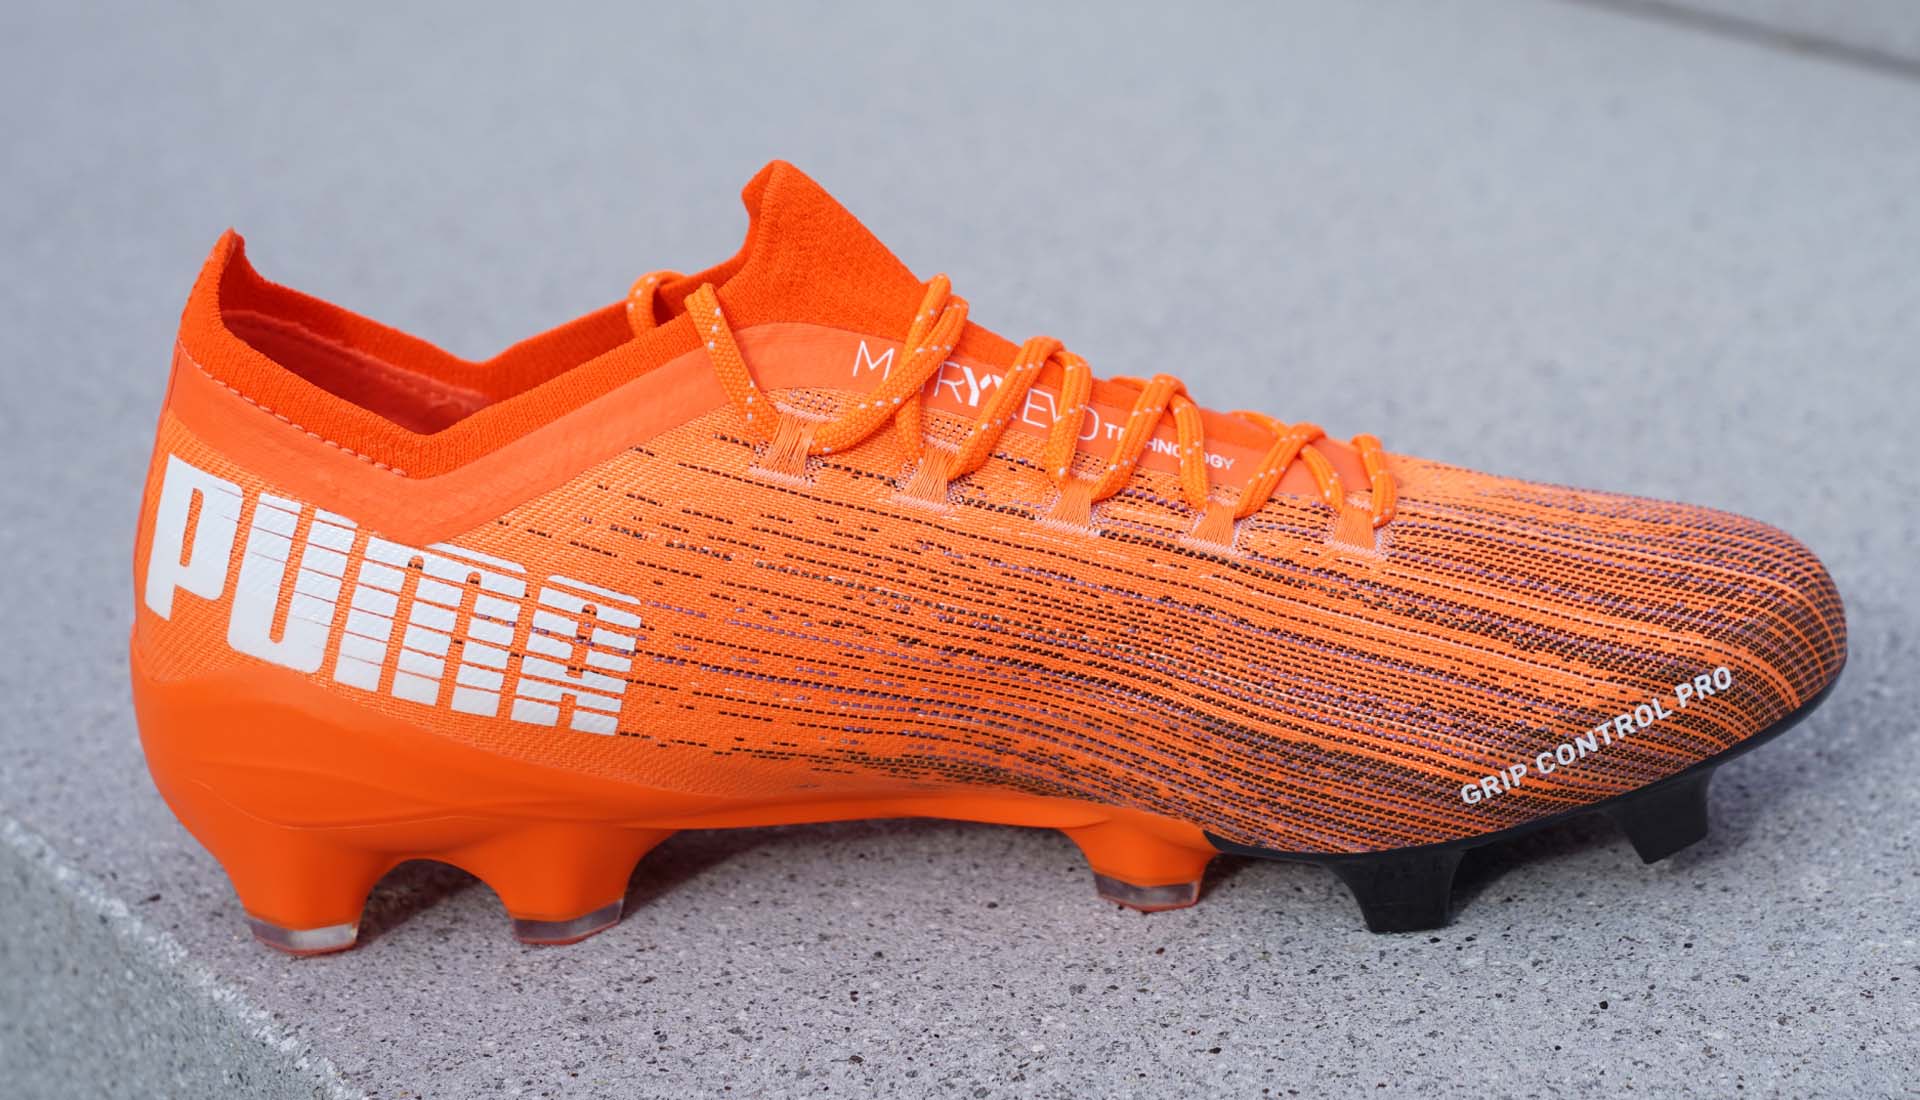 Giày đá bóng Puma siêu nhẹ Ultra 1.1 với chất liệu da vải và thiết kế gọn nhẹ